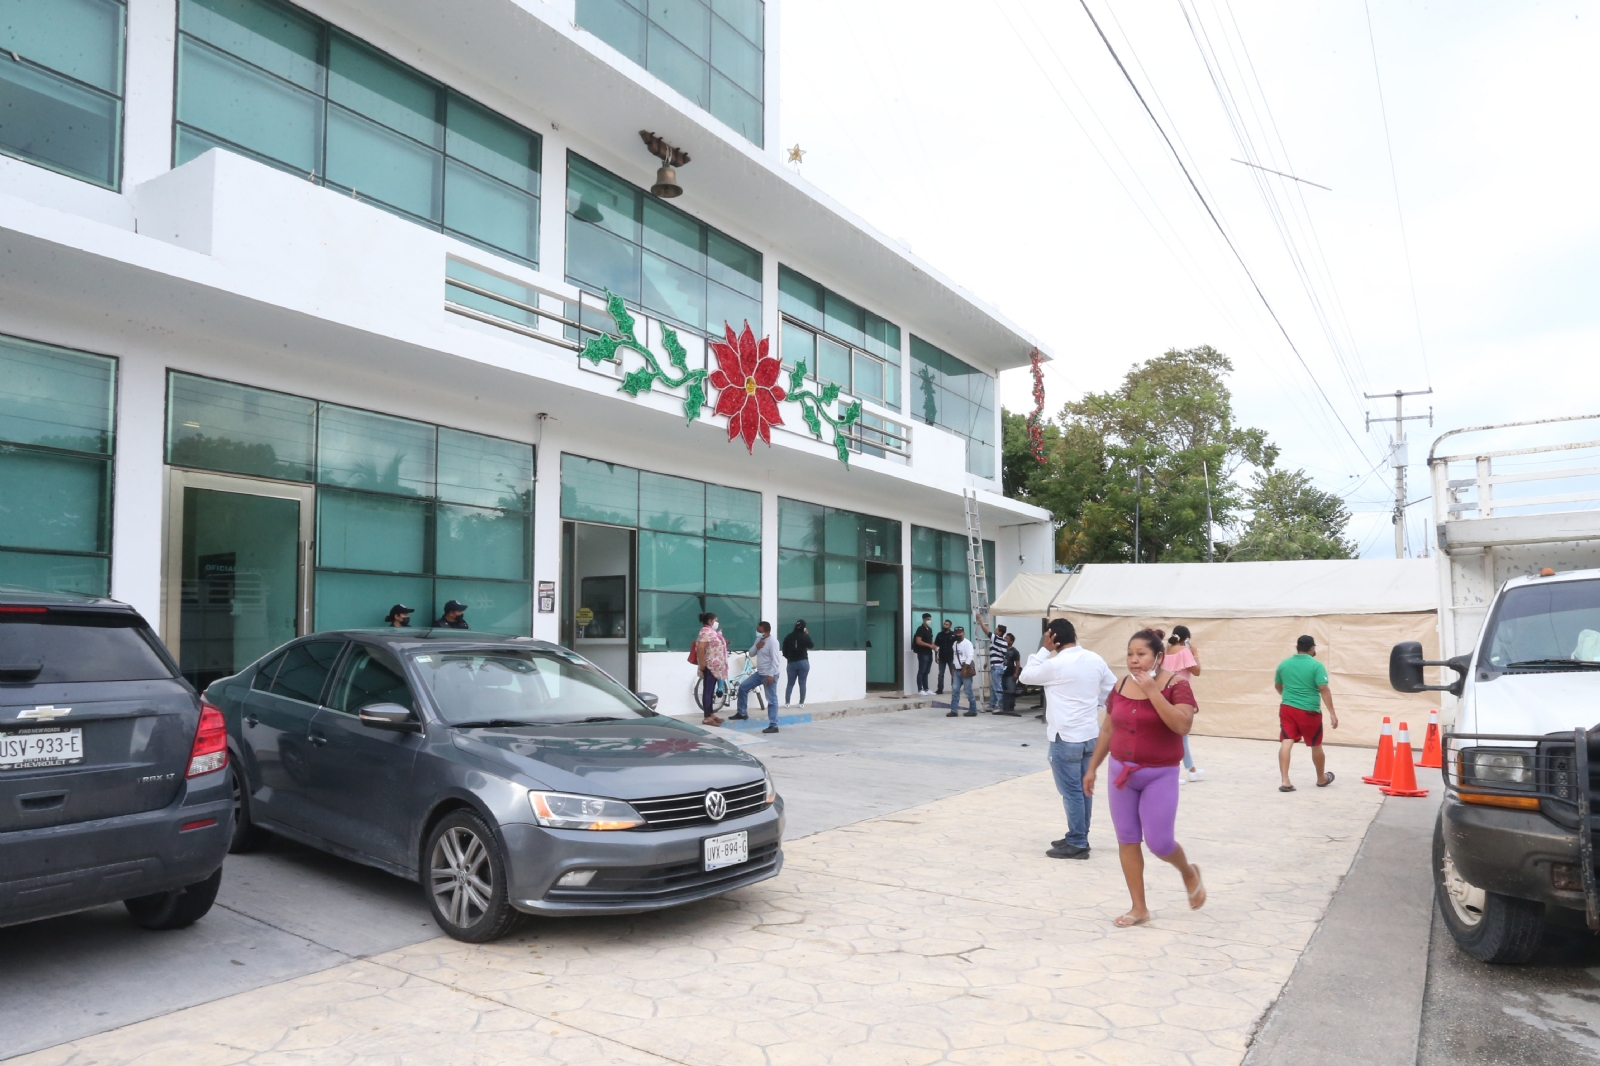 El exfuncionario permanecerá a cargo de la Fiscalía de Quintana Roo